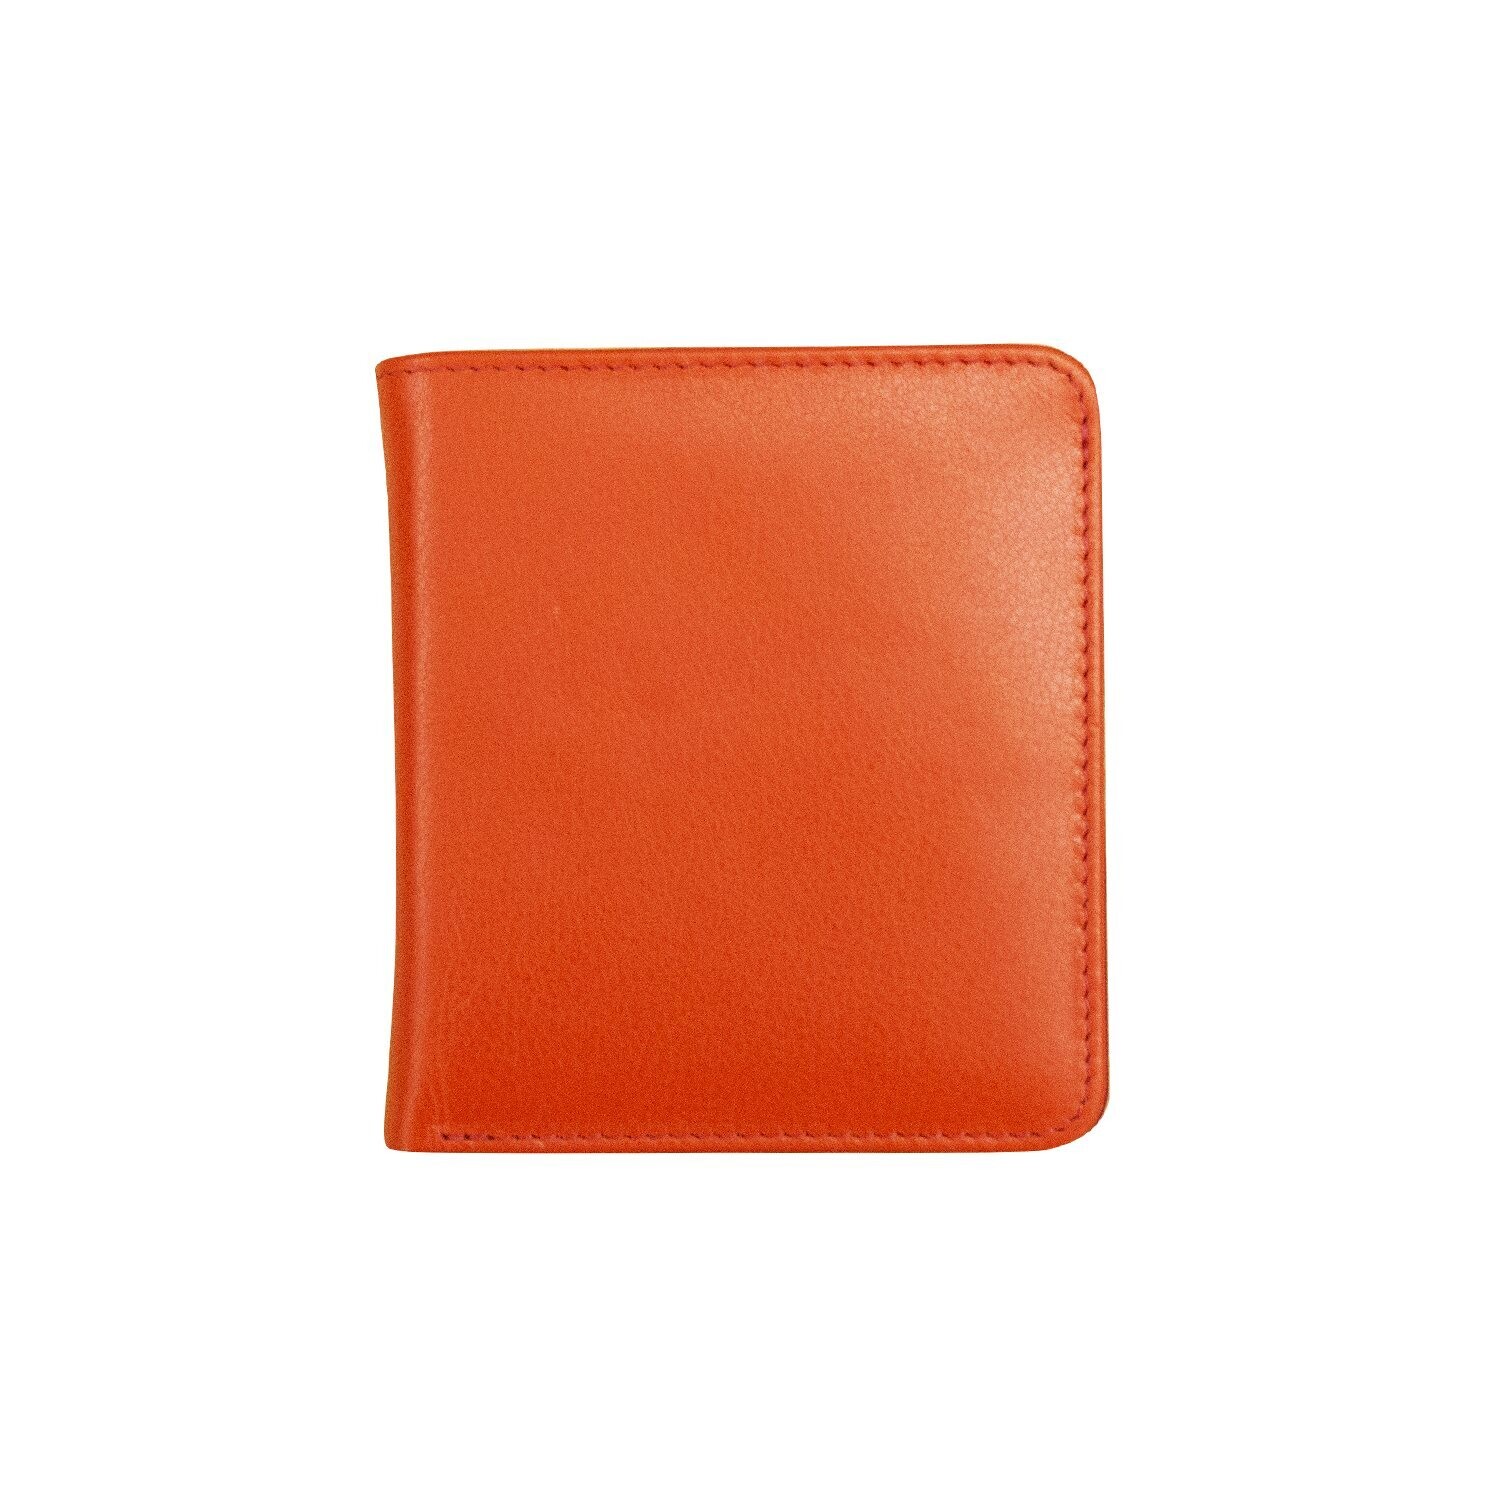 ILI Orange/Red Mini Bi-Fold Wallet 